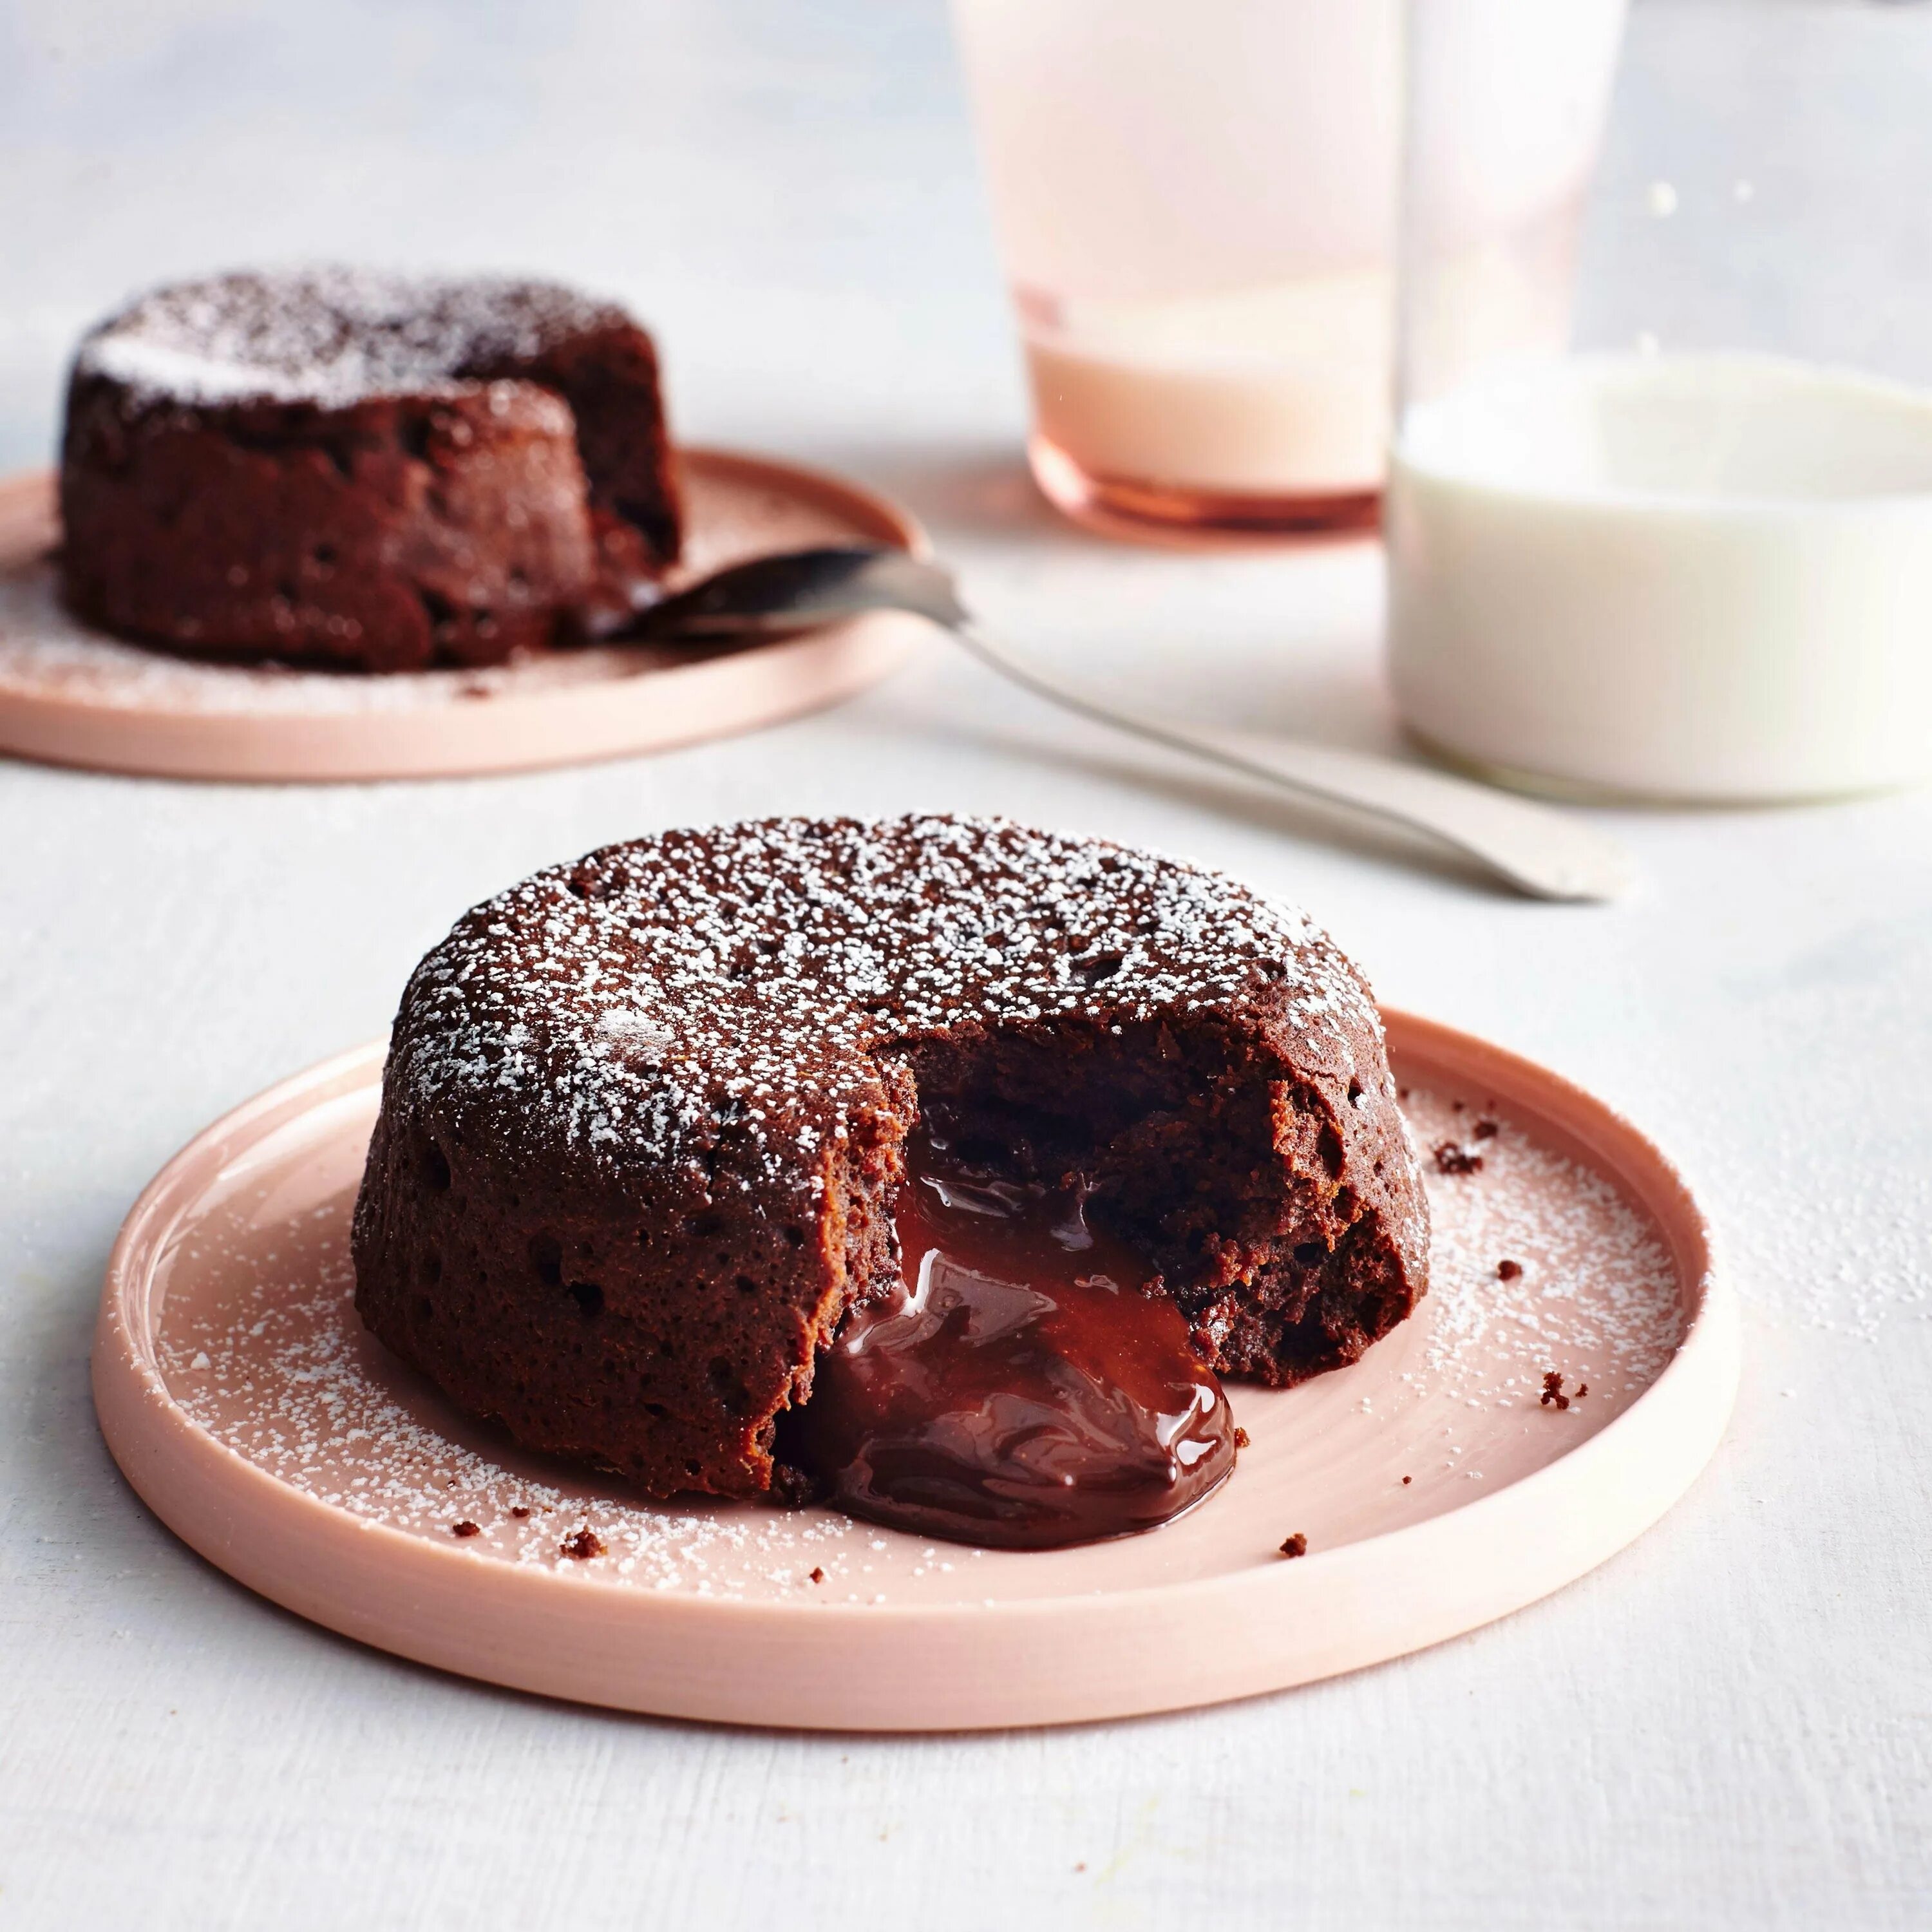 Molten Lava Cake. Брауни шоколадный с жидкой начинкой. Десерт лава кейк. Шоколадный торт с шоколадом внутри.